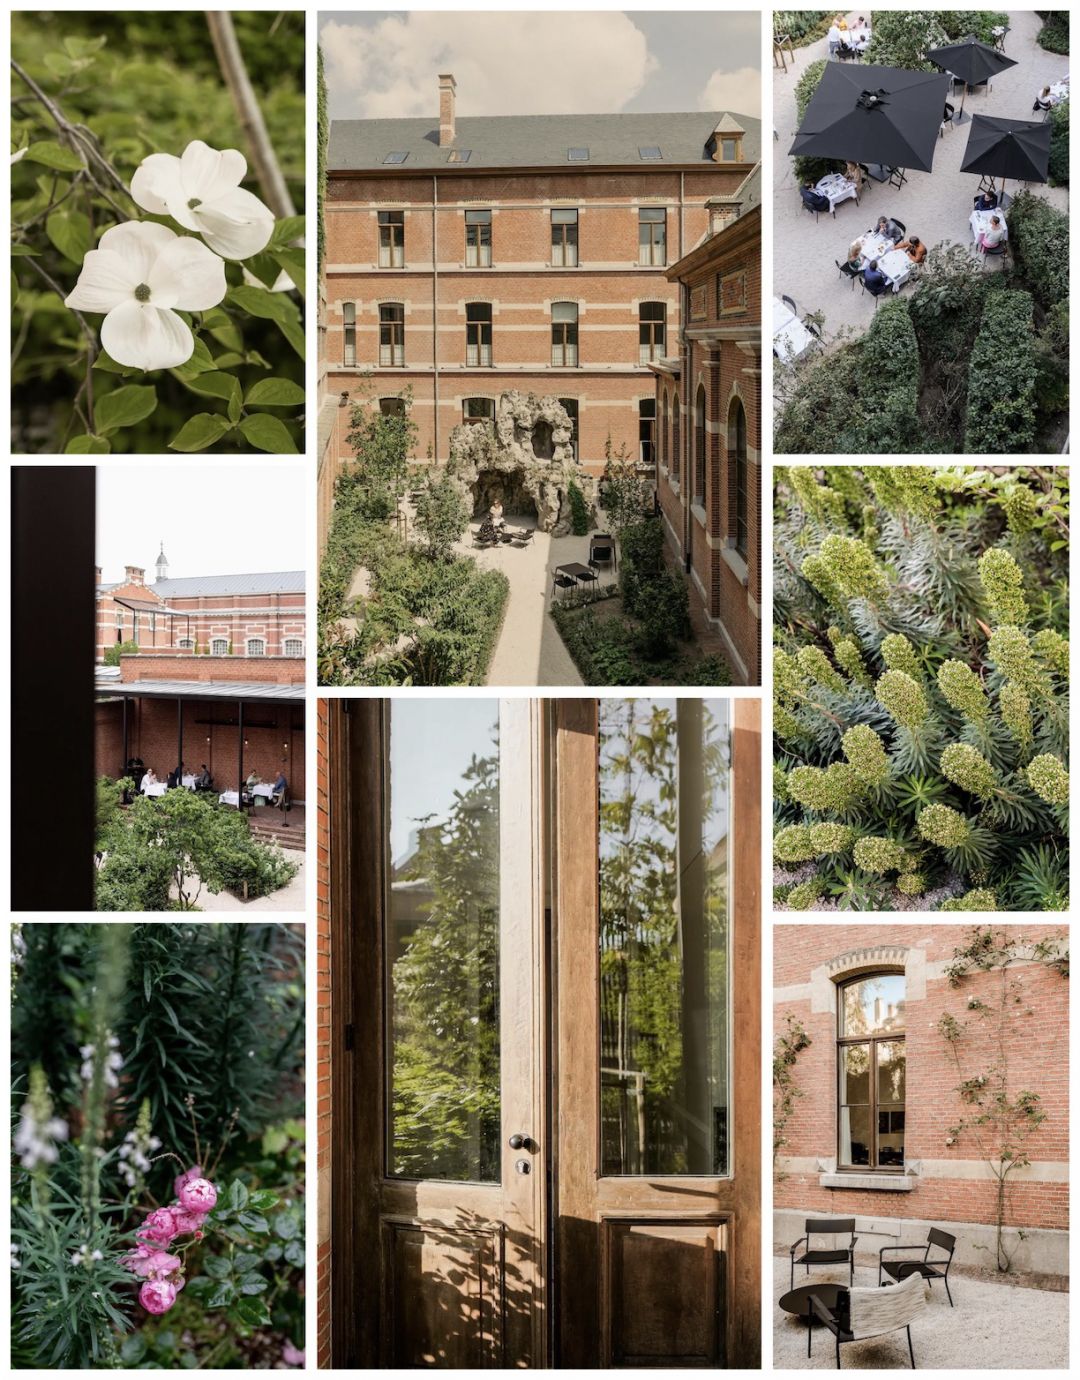 Hotel August Courtyard | Garden Design by Wirtz Landscapes Belgium